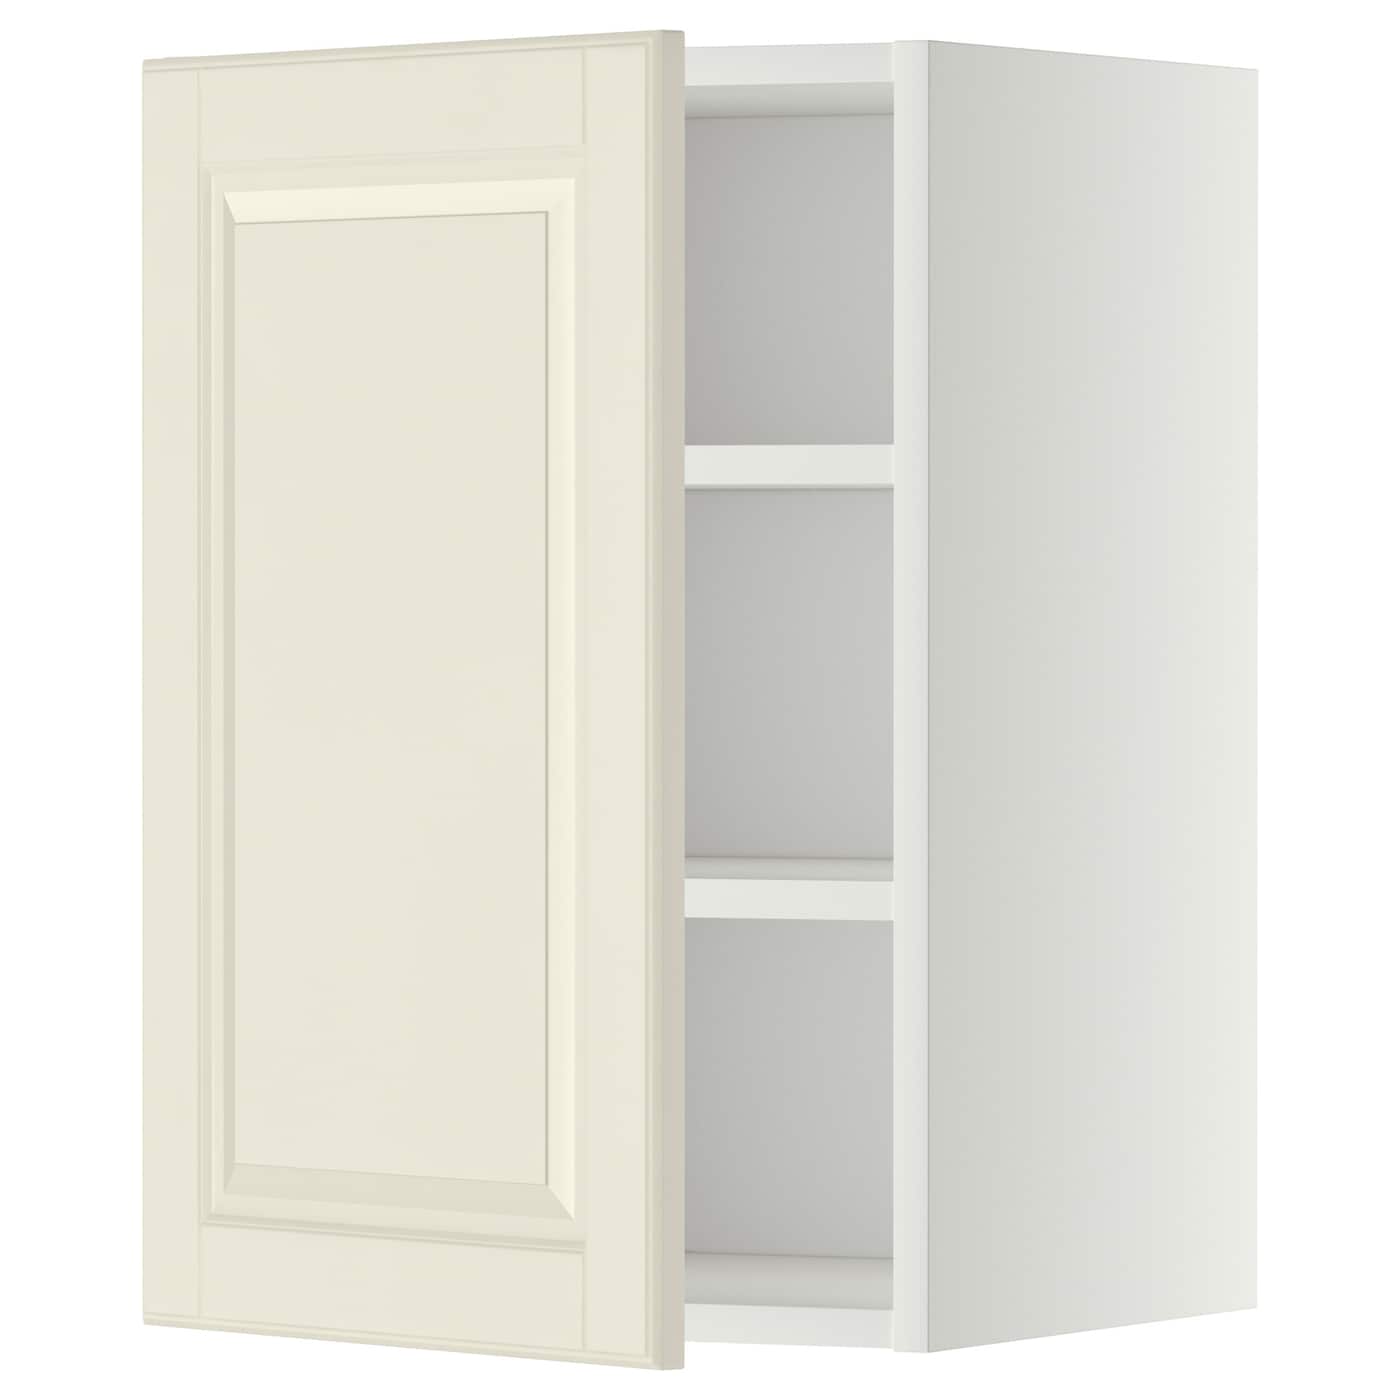 Навесной шкаф с полкой - METOD IKEA/ МЕТОД ИКЕА, 60х40 см, белый/кремовый